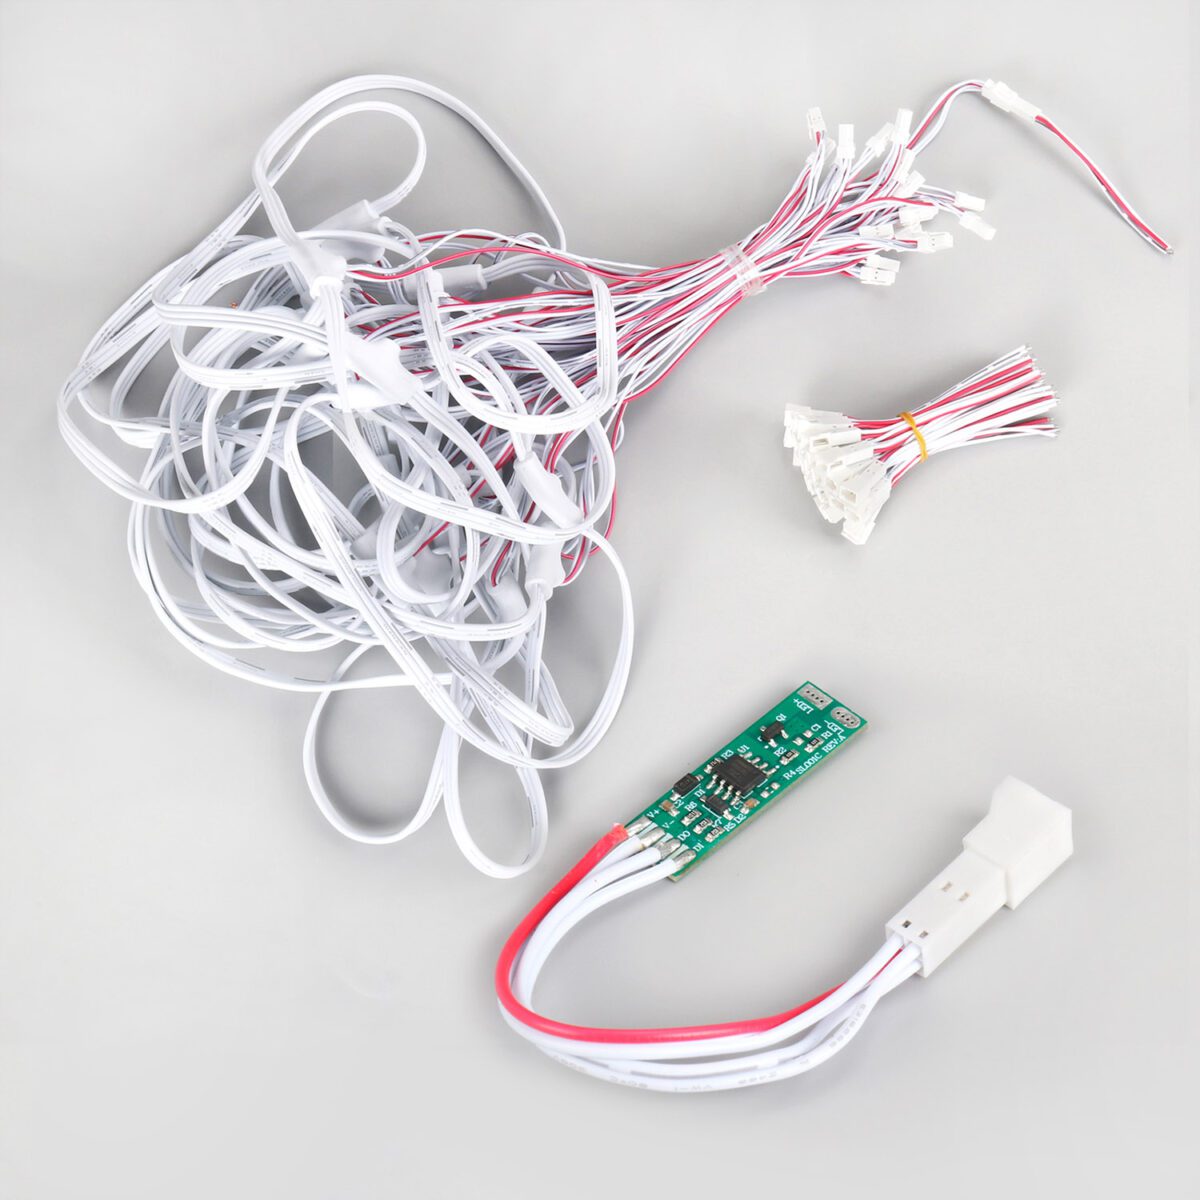 Receptor STAIR + cable de conexión T